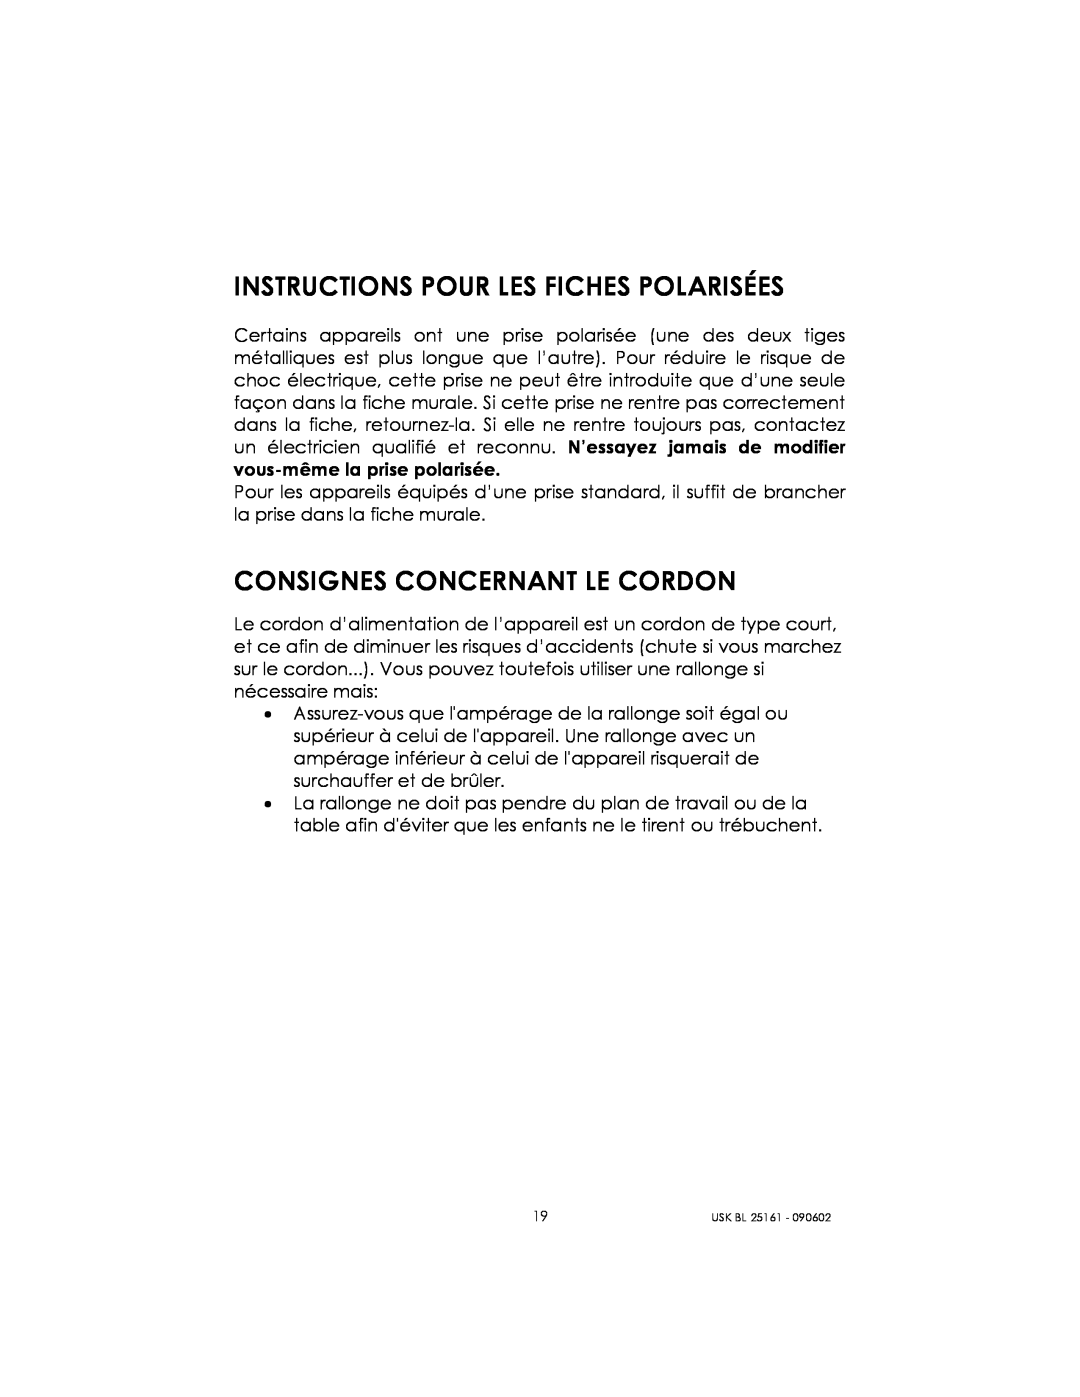 Kalorik usk bl 25161 manual Instructions Pour Les Fiches Polarisées, Consignes Concernant Le Cordon 